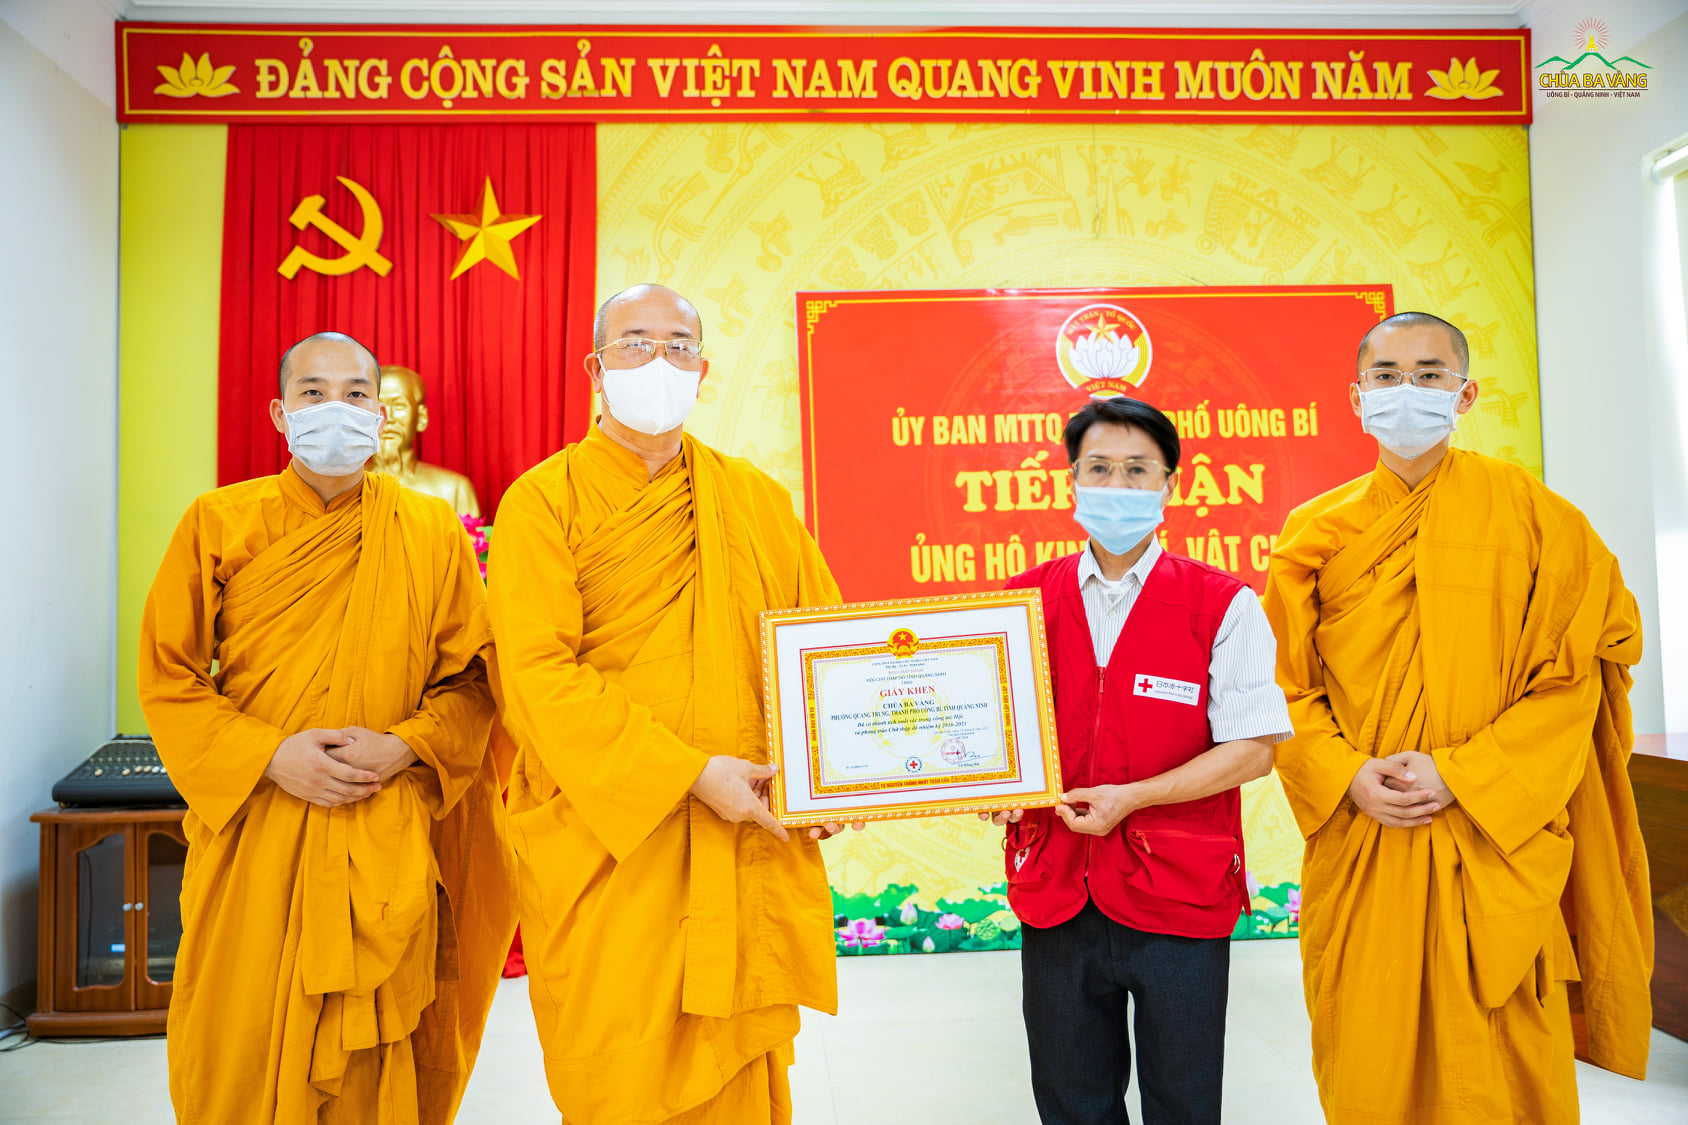 Ông Vũ Hải Phong - Phó Chủ tịch Hội chữ thập đỏ TP. Uông Bí thừa ủy quyền của Hội chữ thập đỏ tỉnh Quảng Ninh trao tặng giấy khen, ghi nhận những thành tích xuất sắc của chùa Ba Vàng trong công tác Hội và phong trào Chữ thập đỏ nhiệm kỳ 2016 - 2021